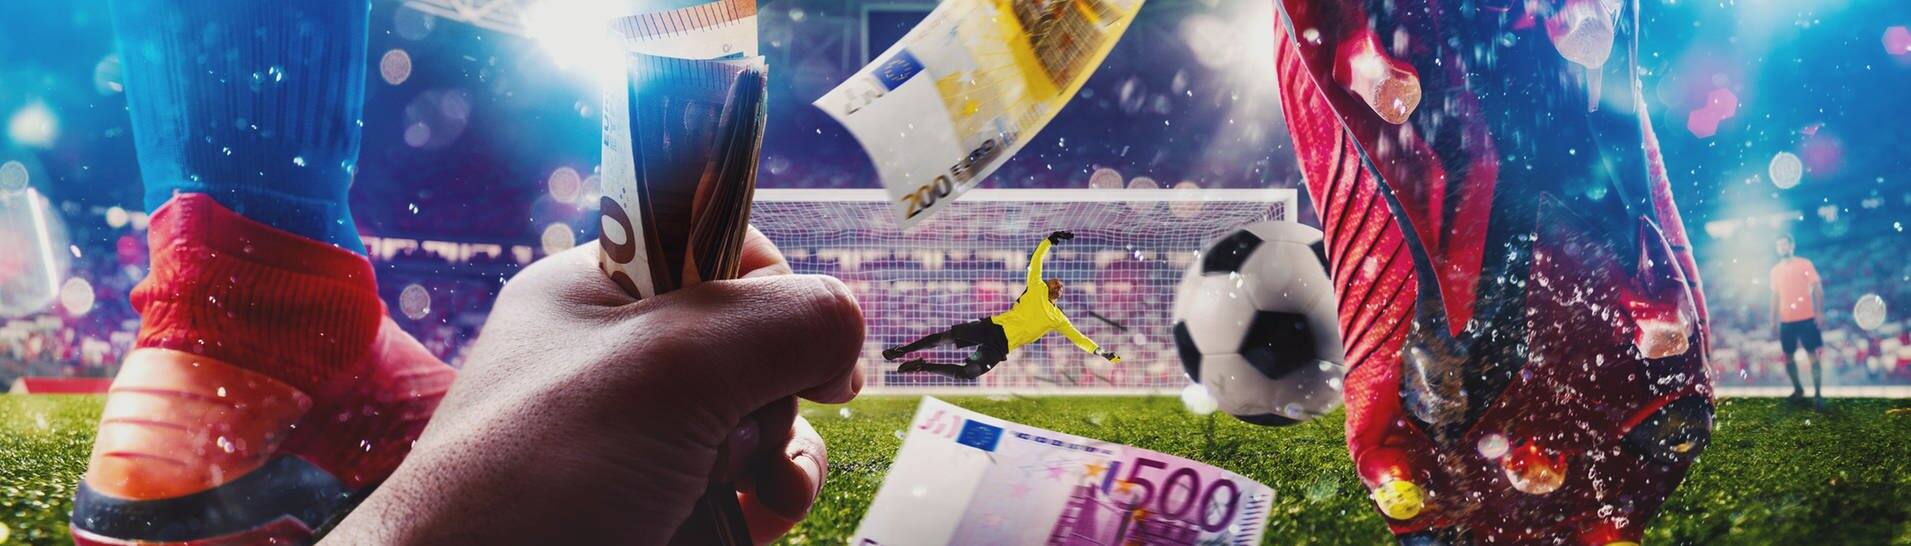 Füße eines Fußballers auf dem Rasen in Nahaufnahme, im Vordergrund hält jemand ein Bündel Geldscheine (Foto: IMAGO, Pond5)